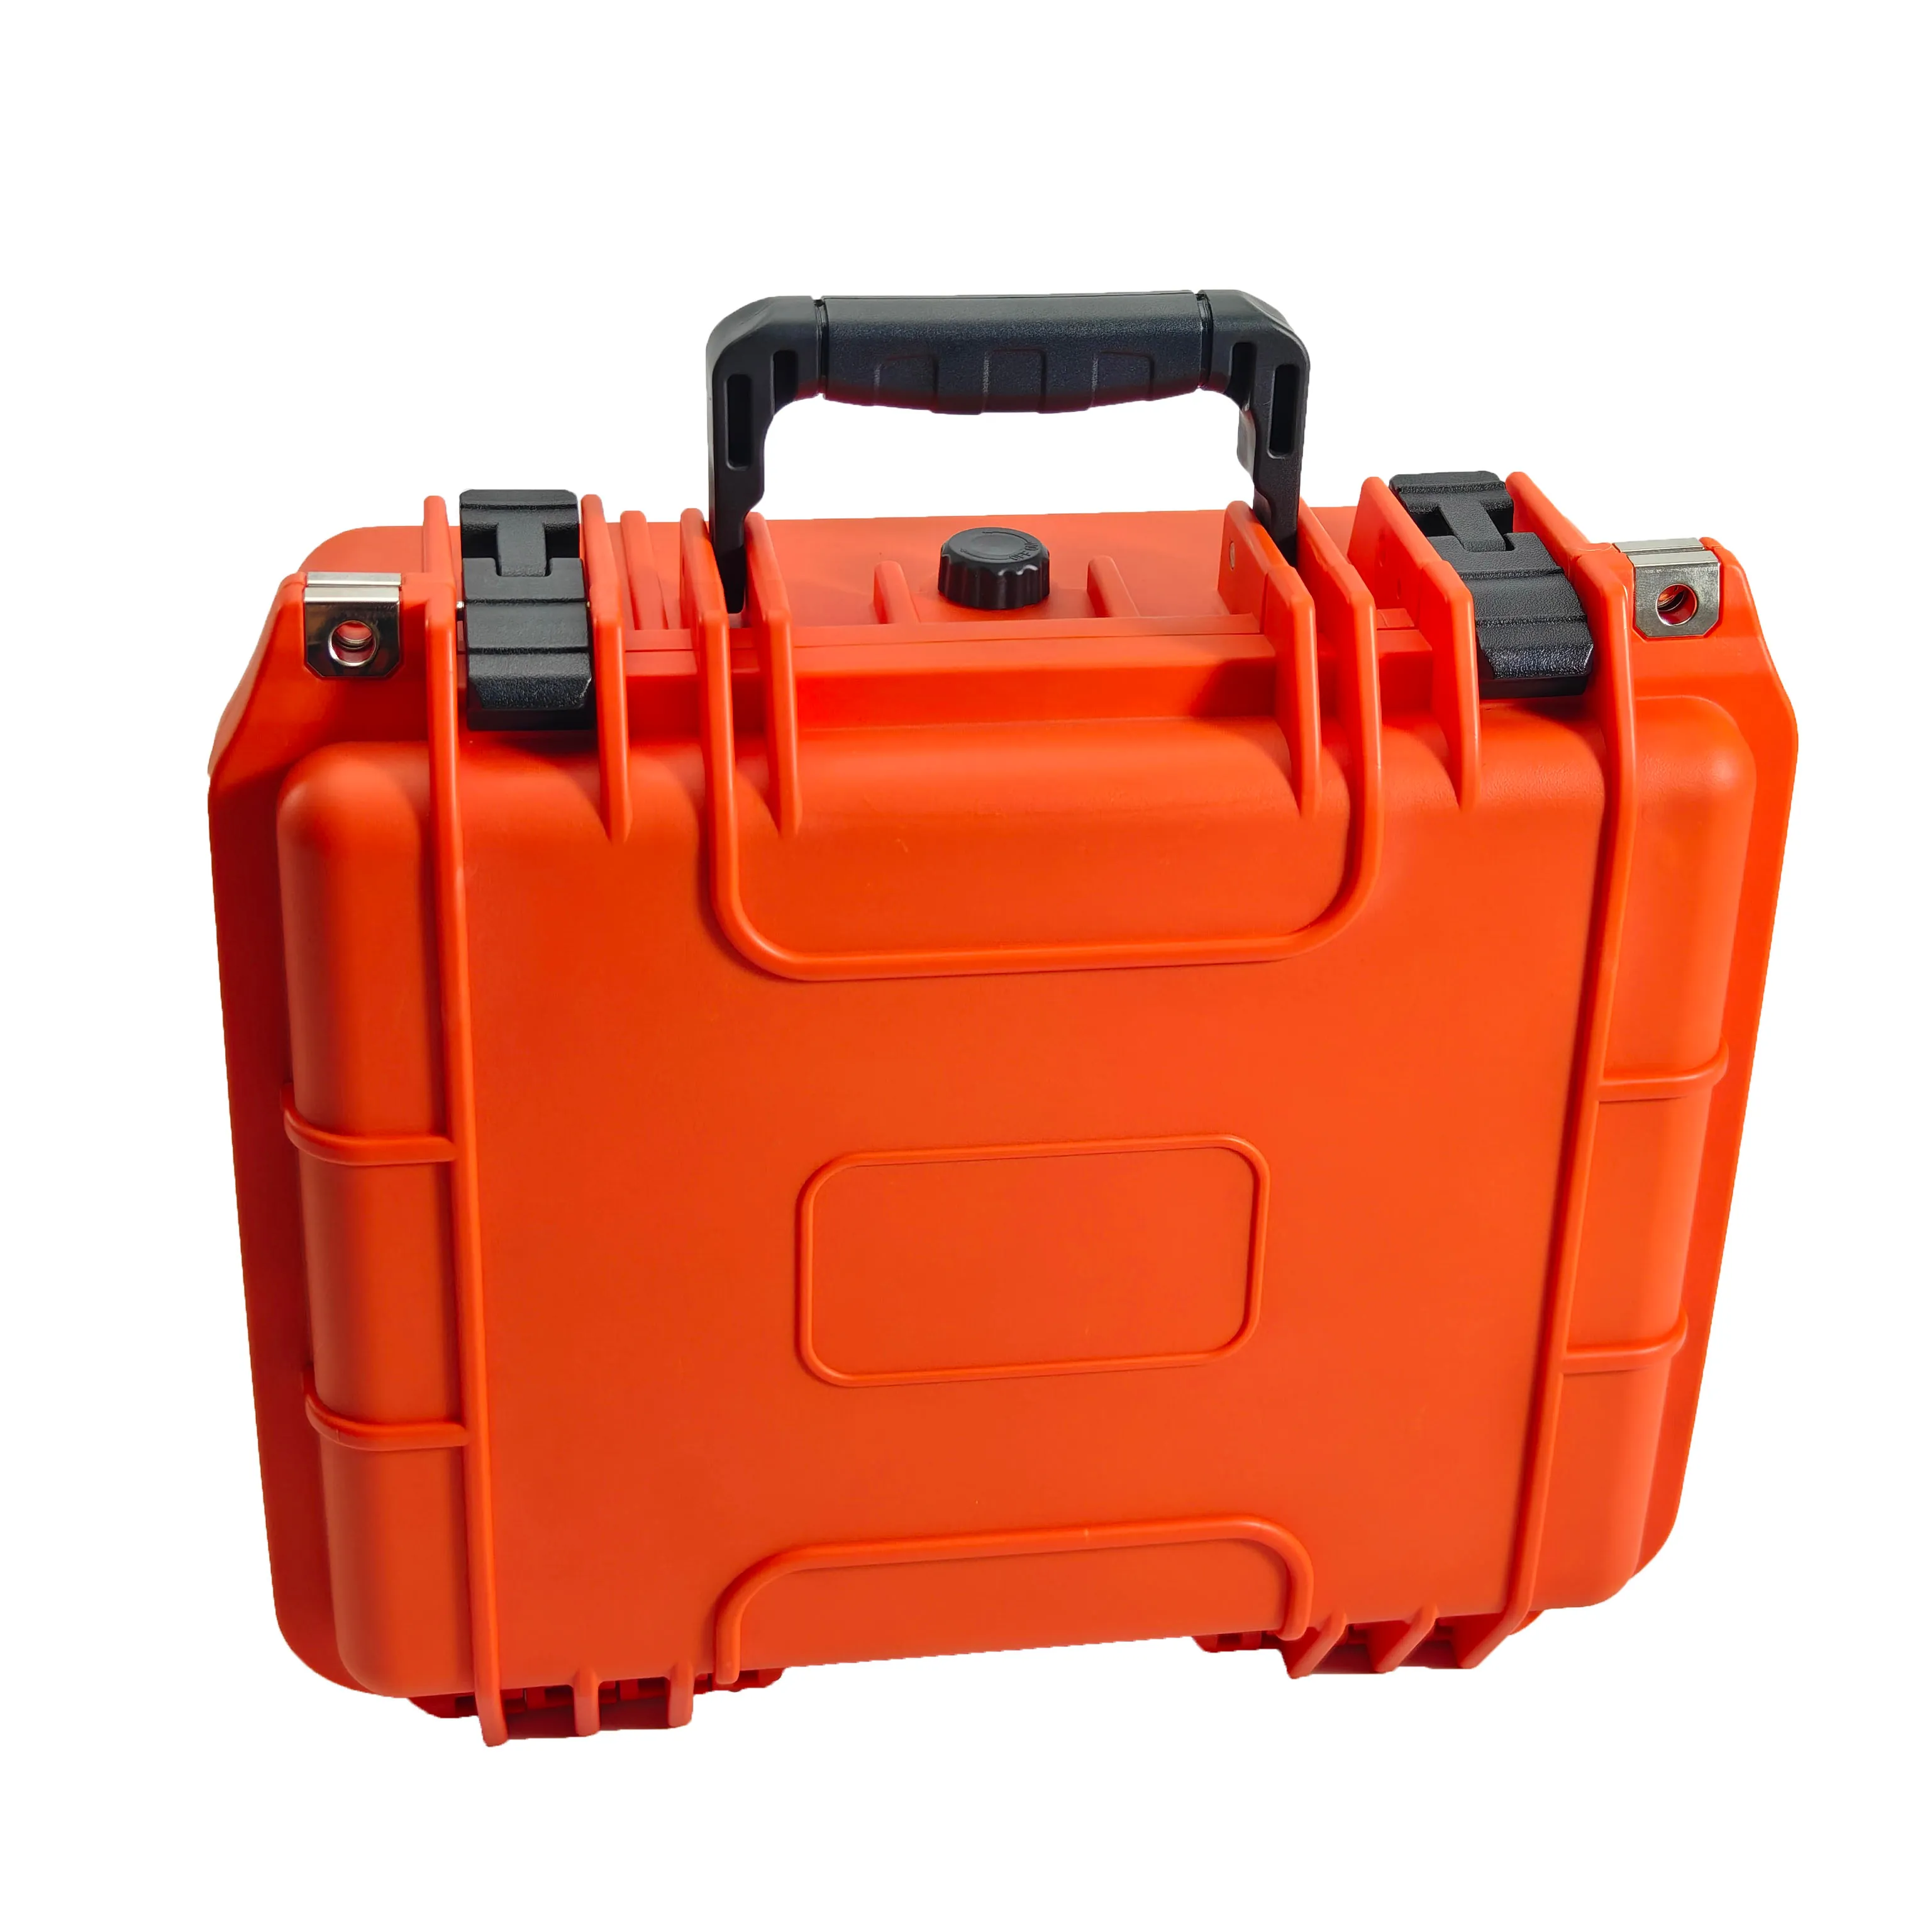 Couleur orange IP67 étanche à la poussière antichoc boîte à outils portable boîtier en plastique dur